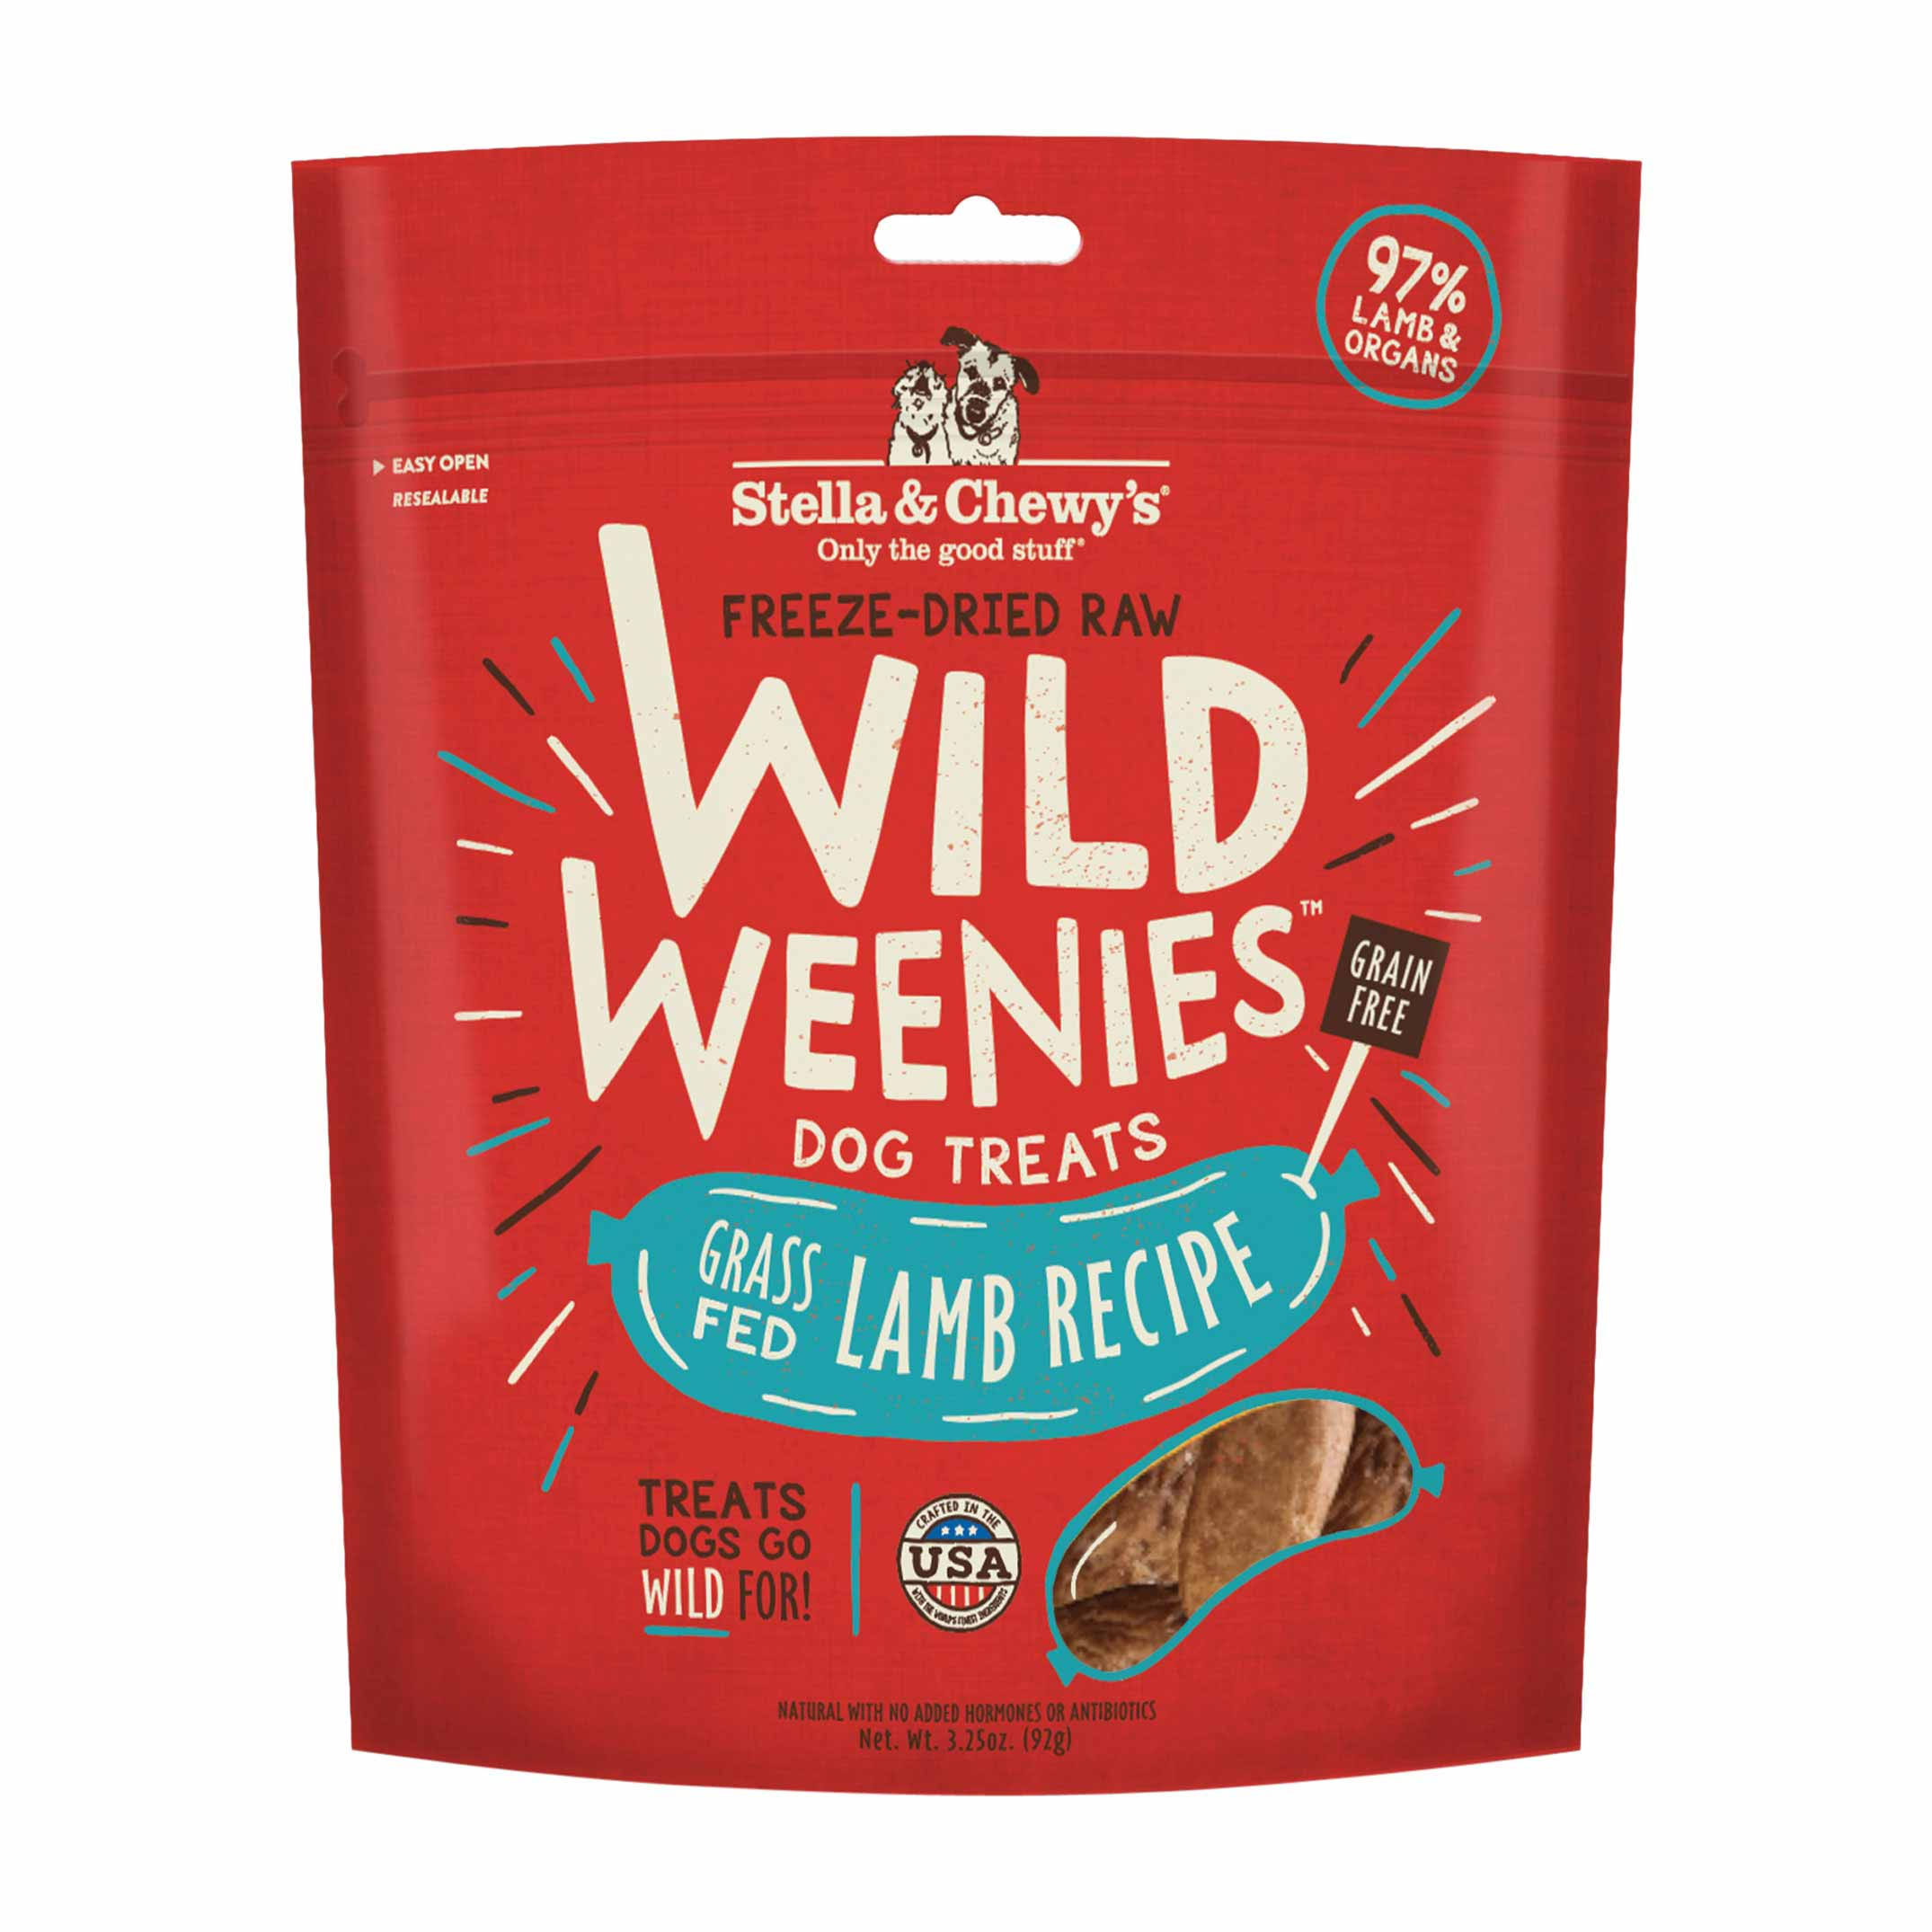 Stella & Chewy's FreezeDried Raw Wild Weenies Dog Treats Lamb Recipe 3.25 oz.